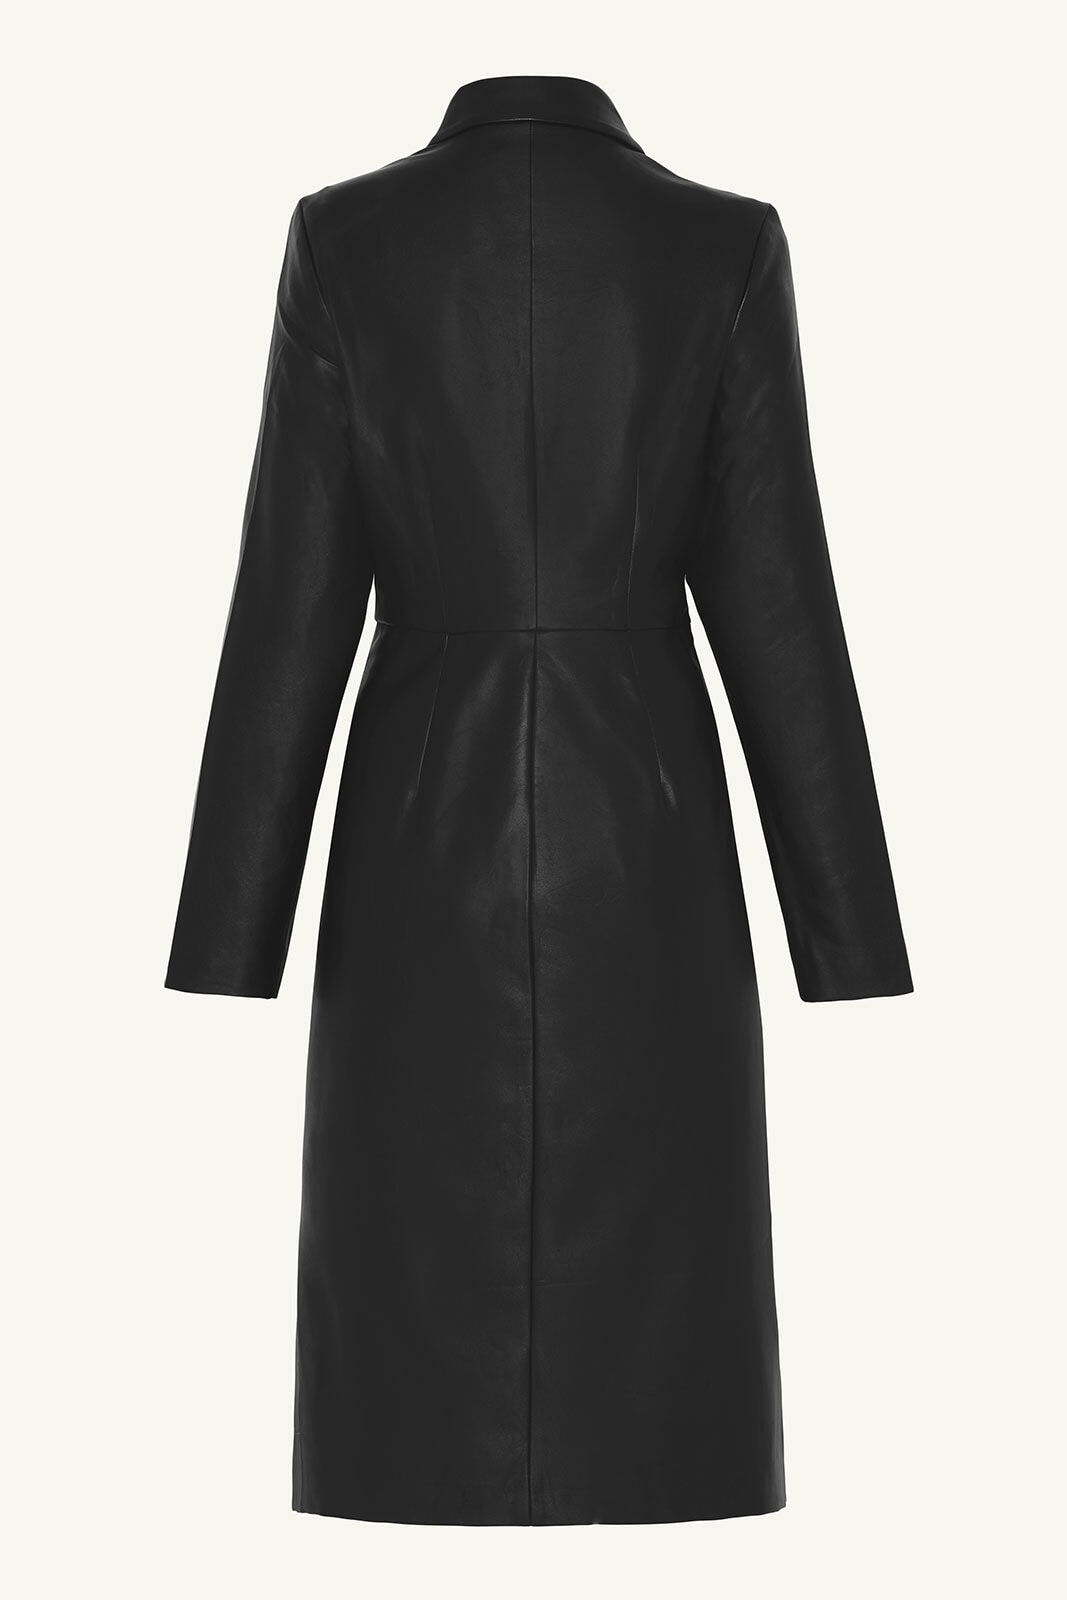 Vegan Leather Midi Jacket - Black Clothing Veiled 